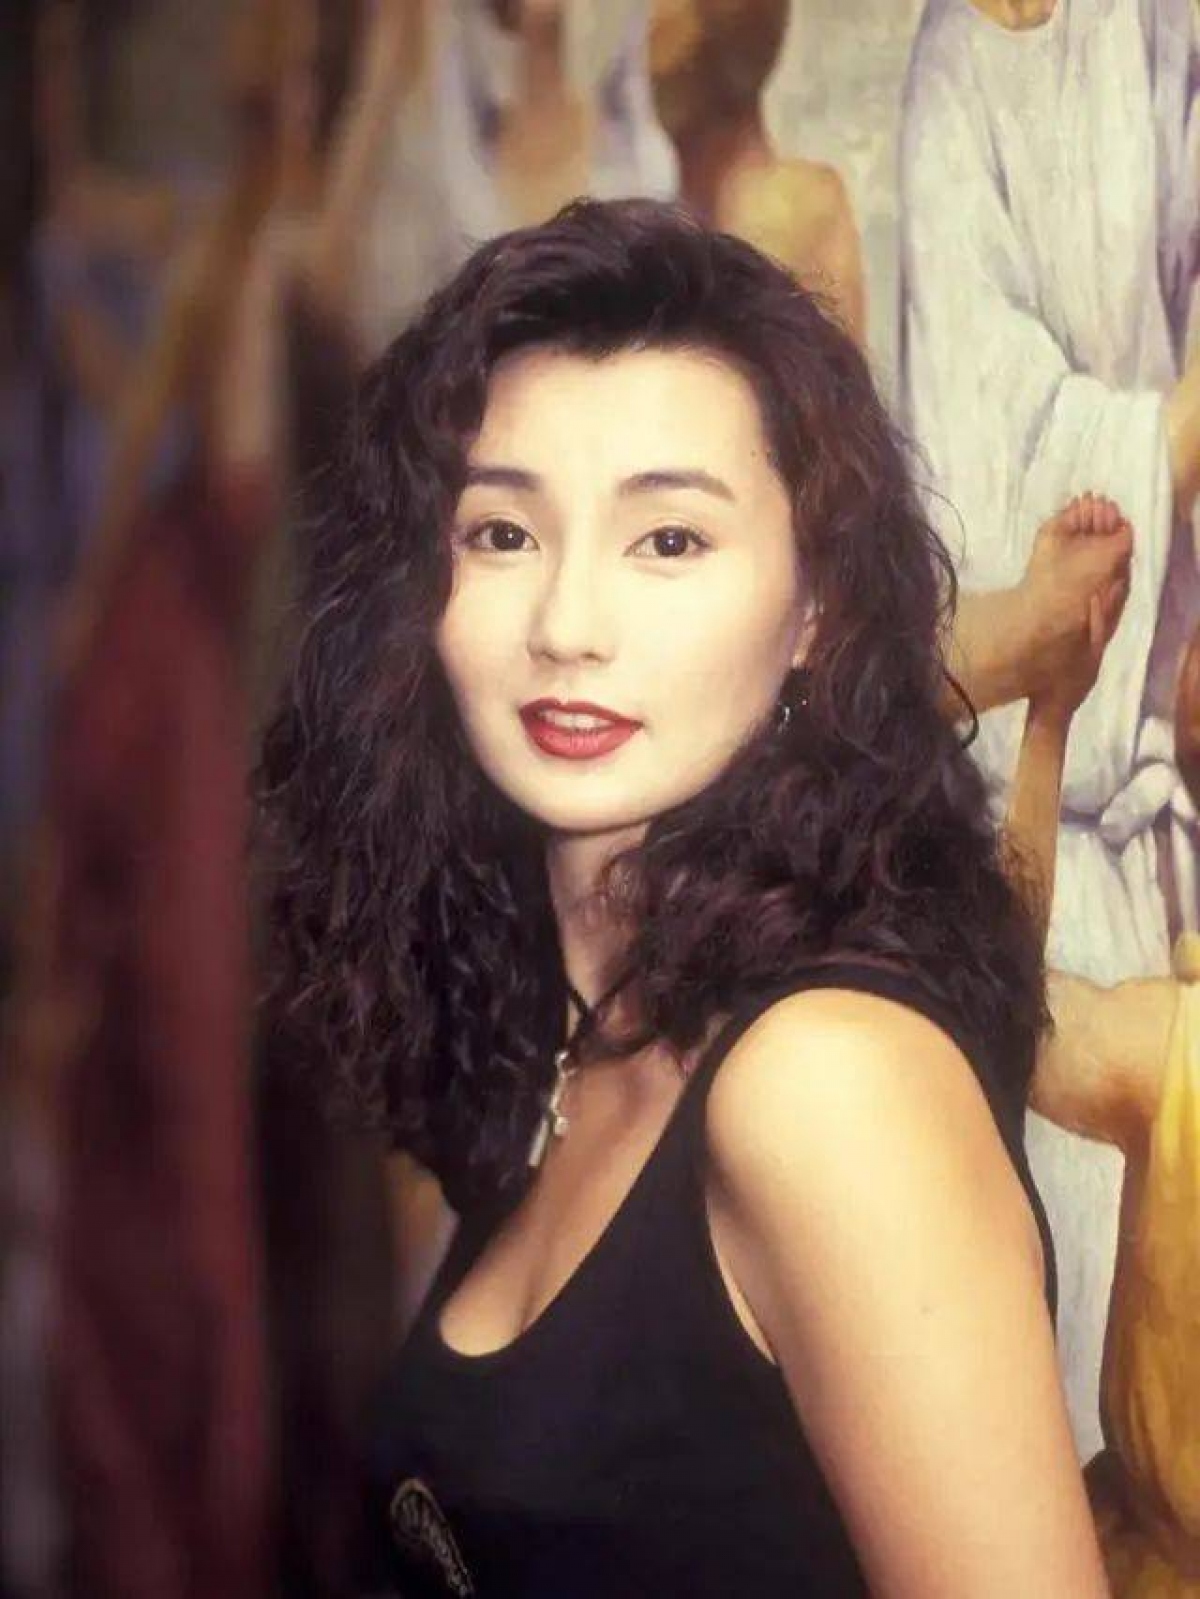 Nữ hoàng màn ảnh Trương Mạn Ngọc: Yêu hết lòng đến 11 lần nhưng vẫn cô đơn - Ảnh 3.